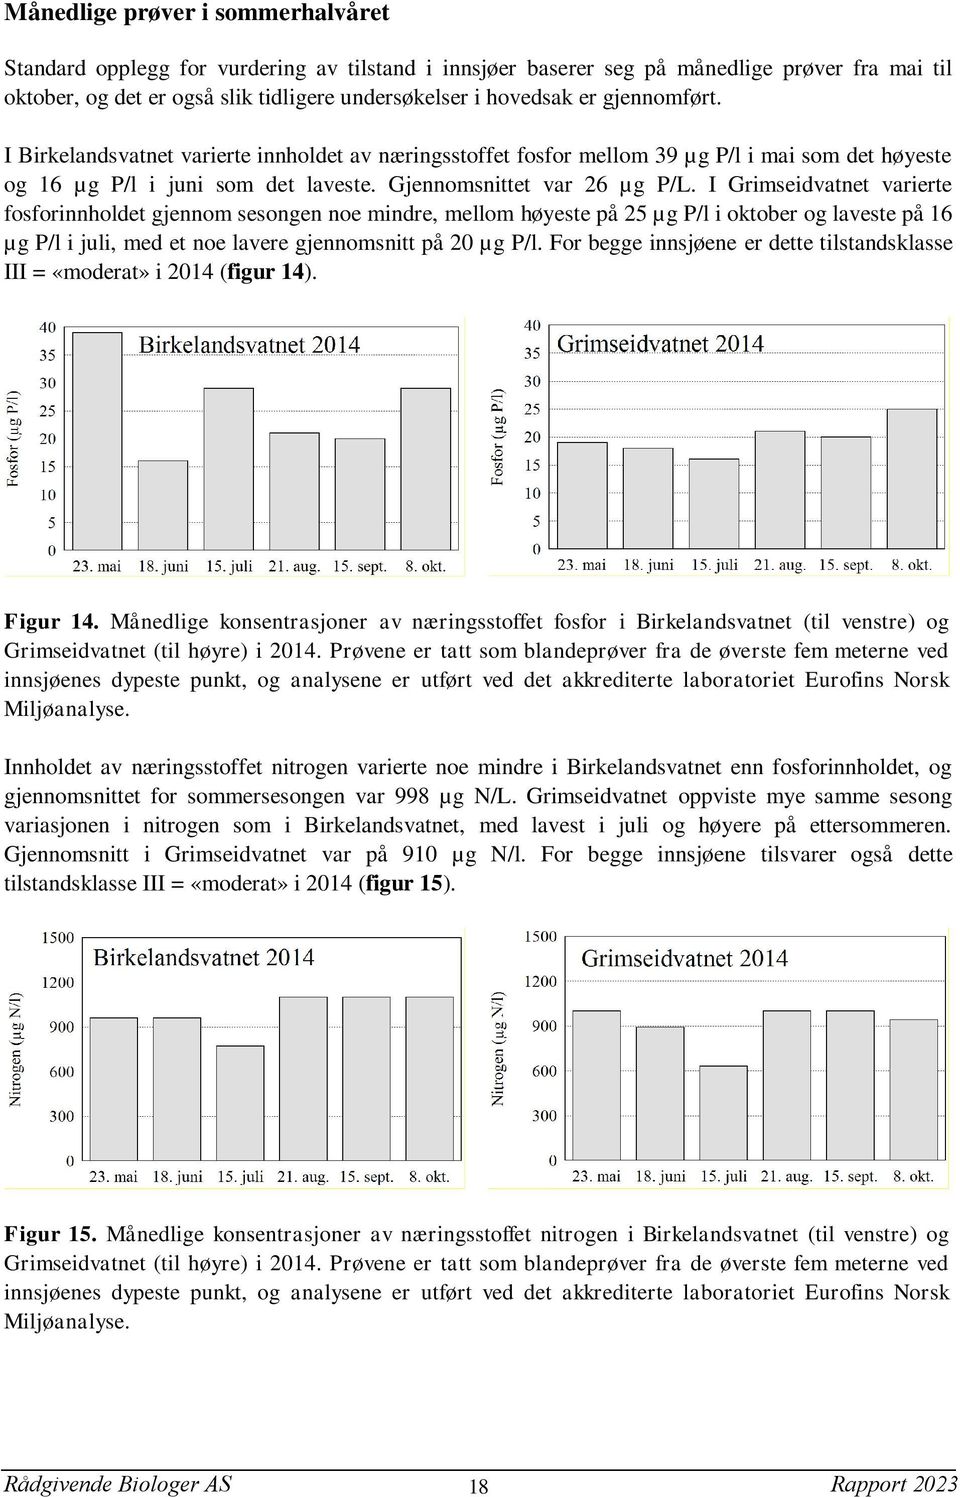 I Grimseidvatnet varierte fosforinnholdet gjennom sesongen noe mindre, mellom høyeste på 25 µg P/l i oktober og laveste på 16 µg P/l i juli, med et noe lavere gjennomsnitt på 20 µg P/l.